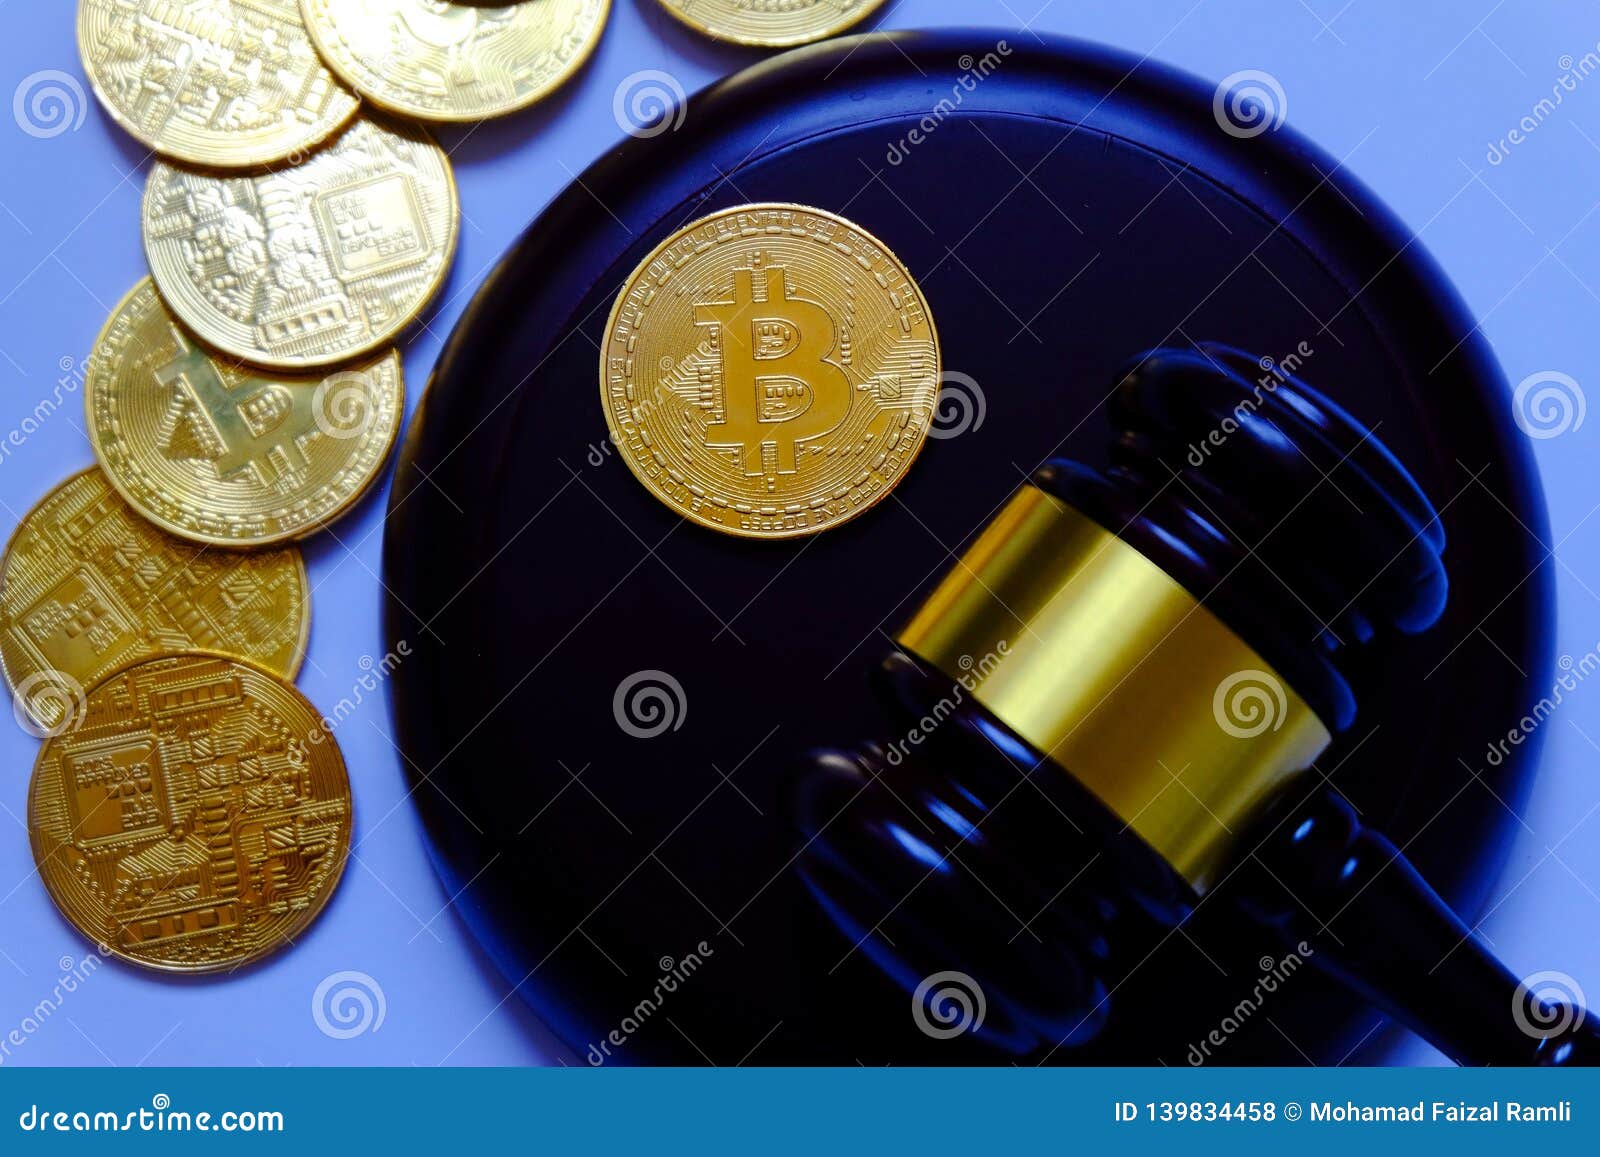 Buy bitcoin with paxum выгодный обмен валют в пензе